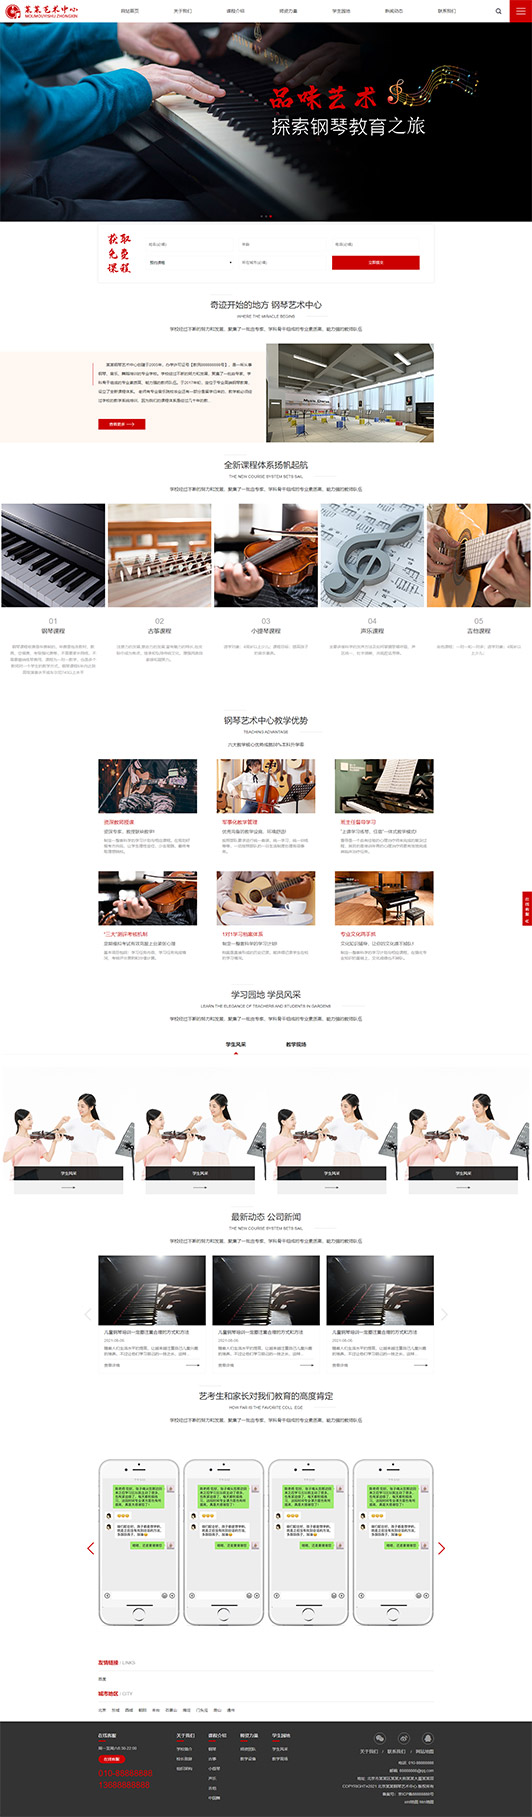 周口钢琴艺术培训公司响应式企业网站